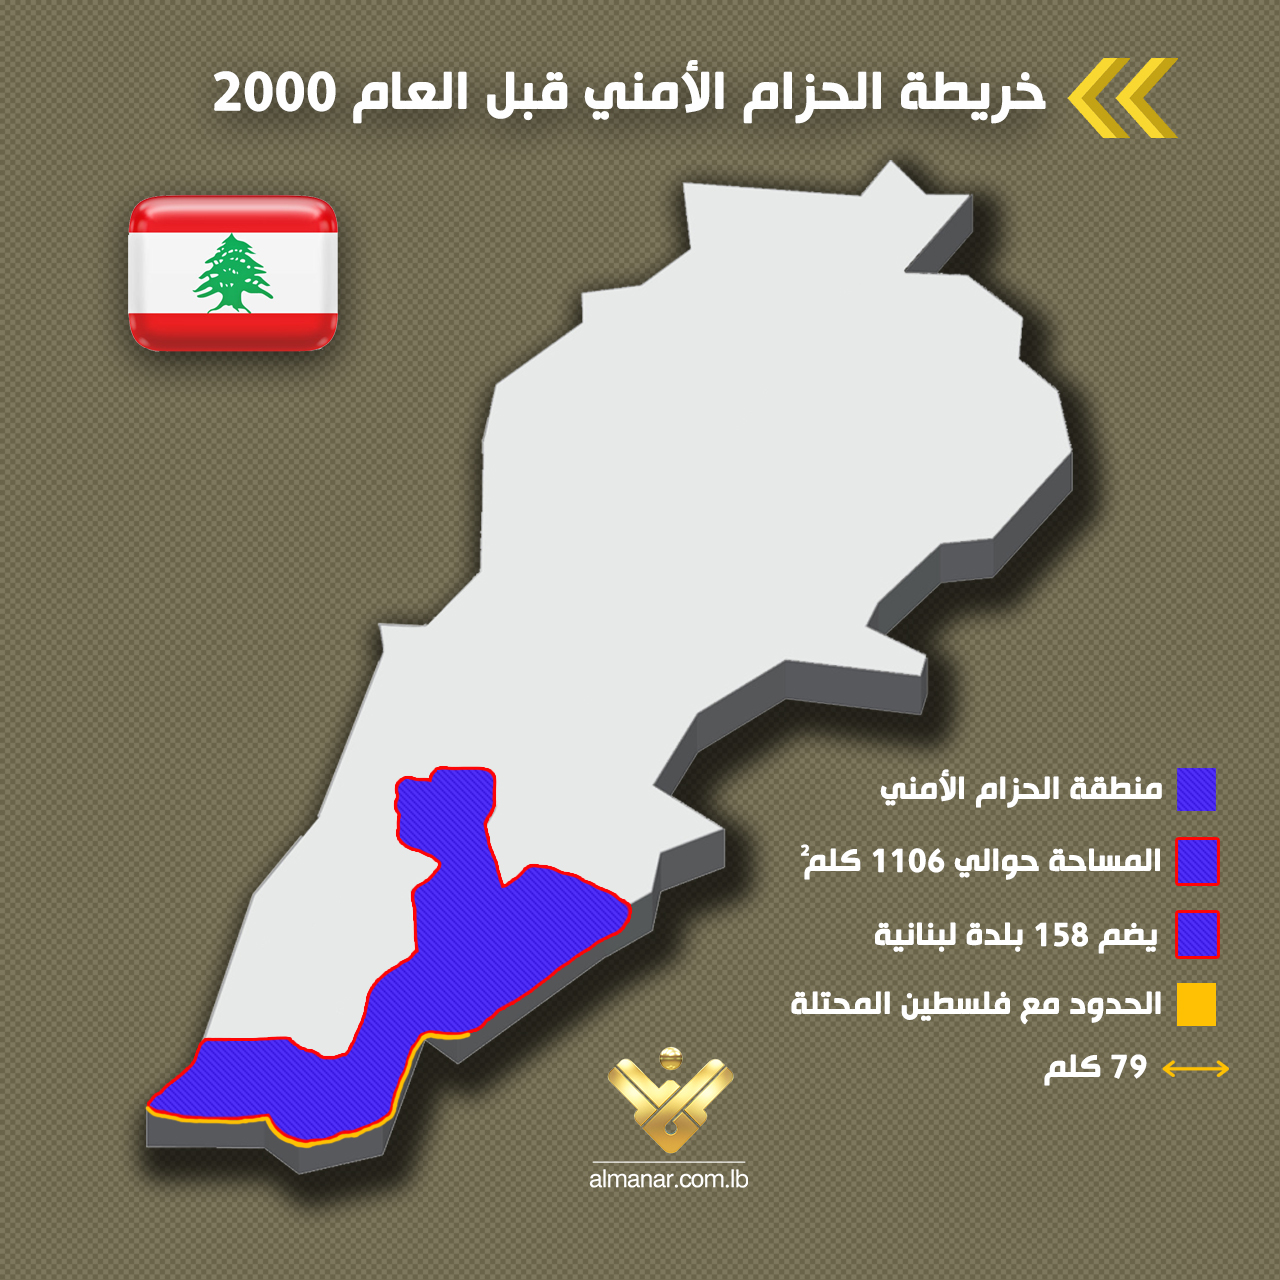 خارطة تُظهر منطقة الحزام الأمني الإسرائيلي في جنوب لبنان قبل تحرير العام 2000